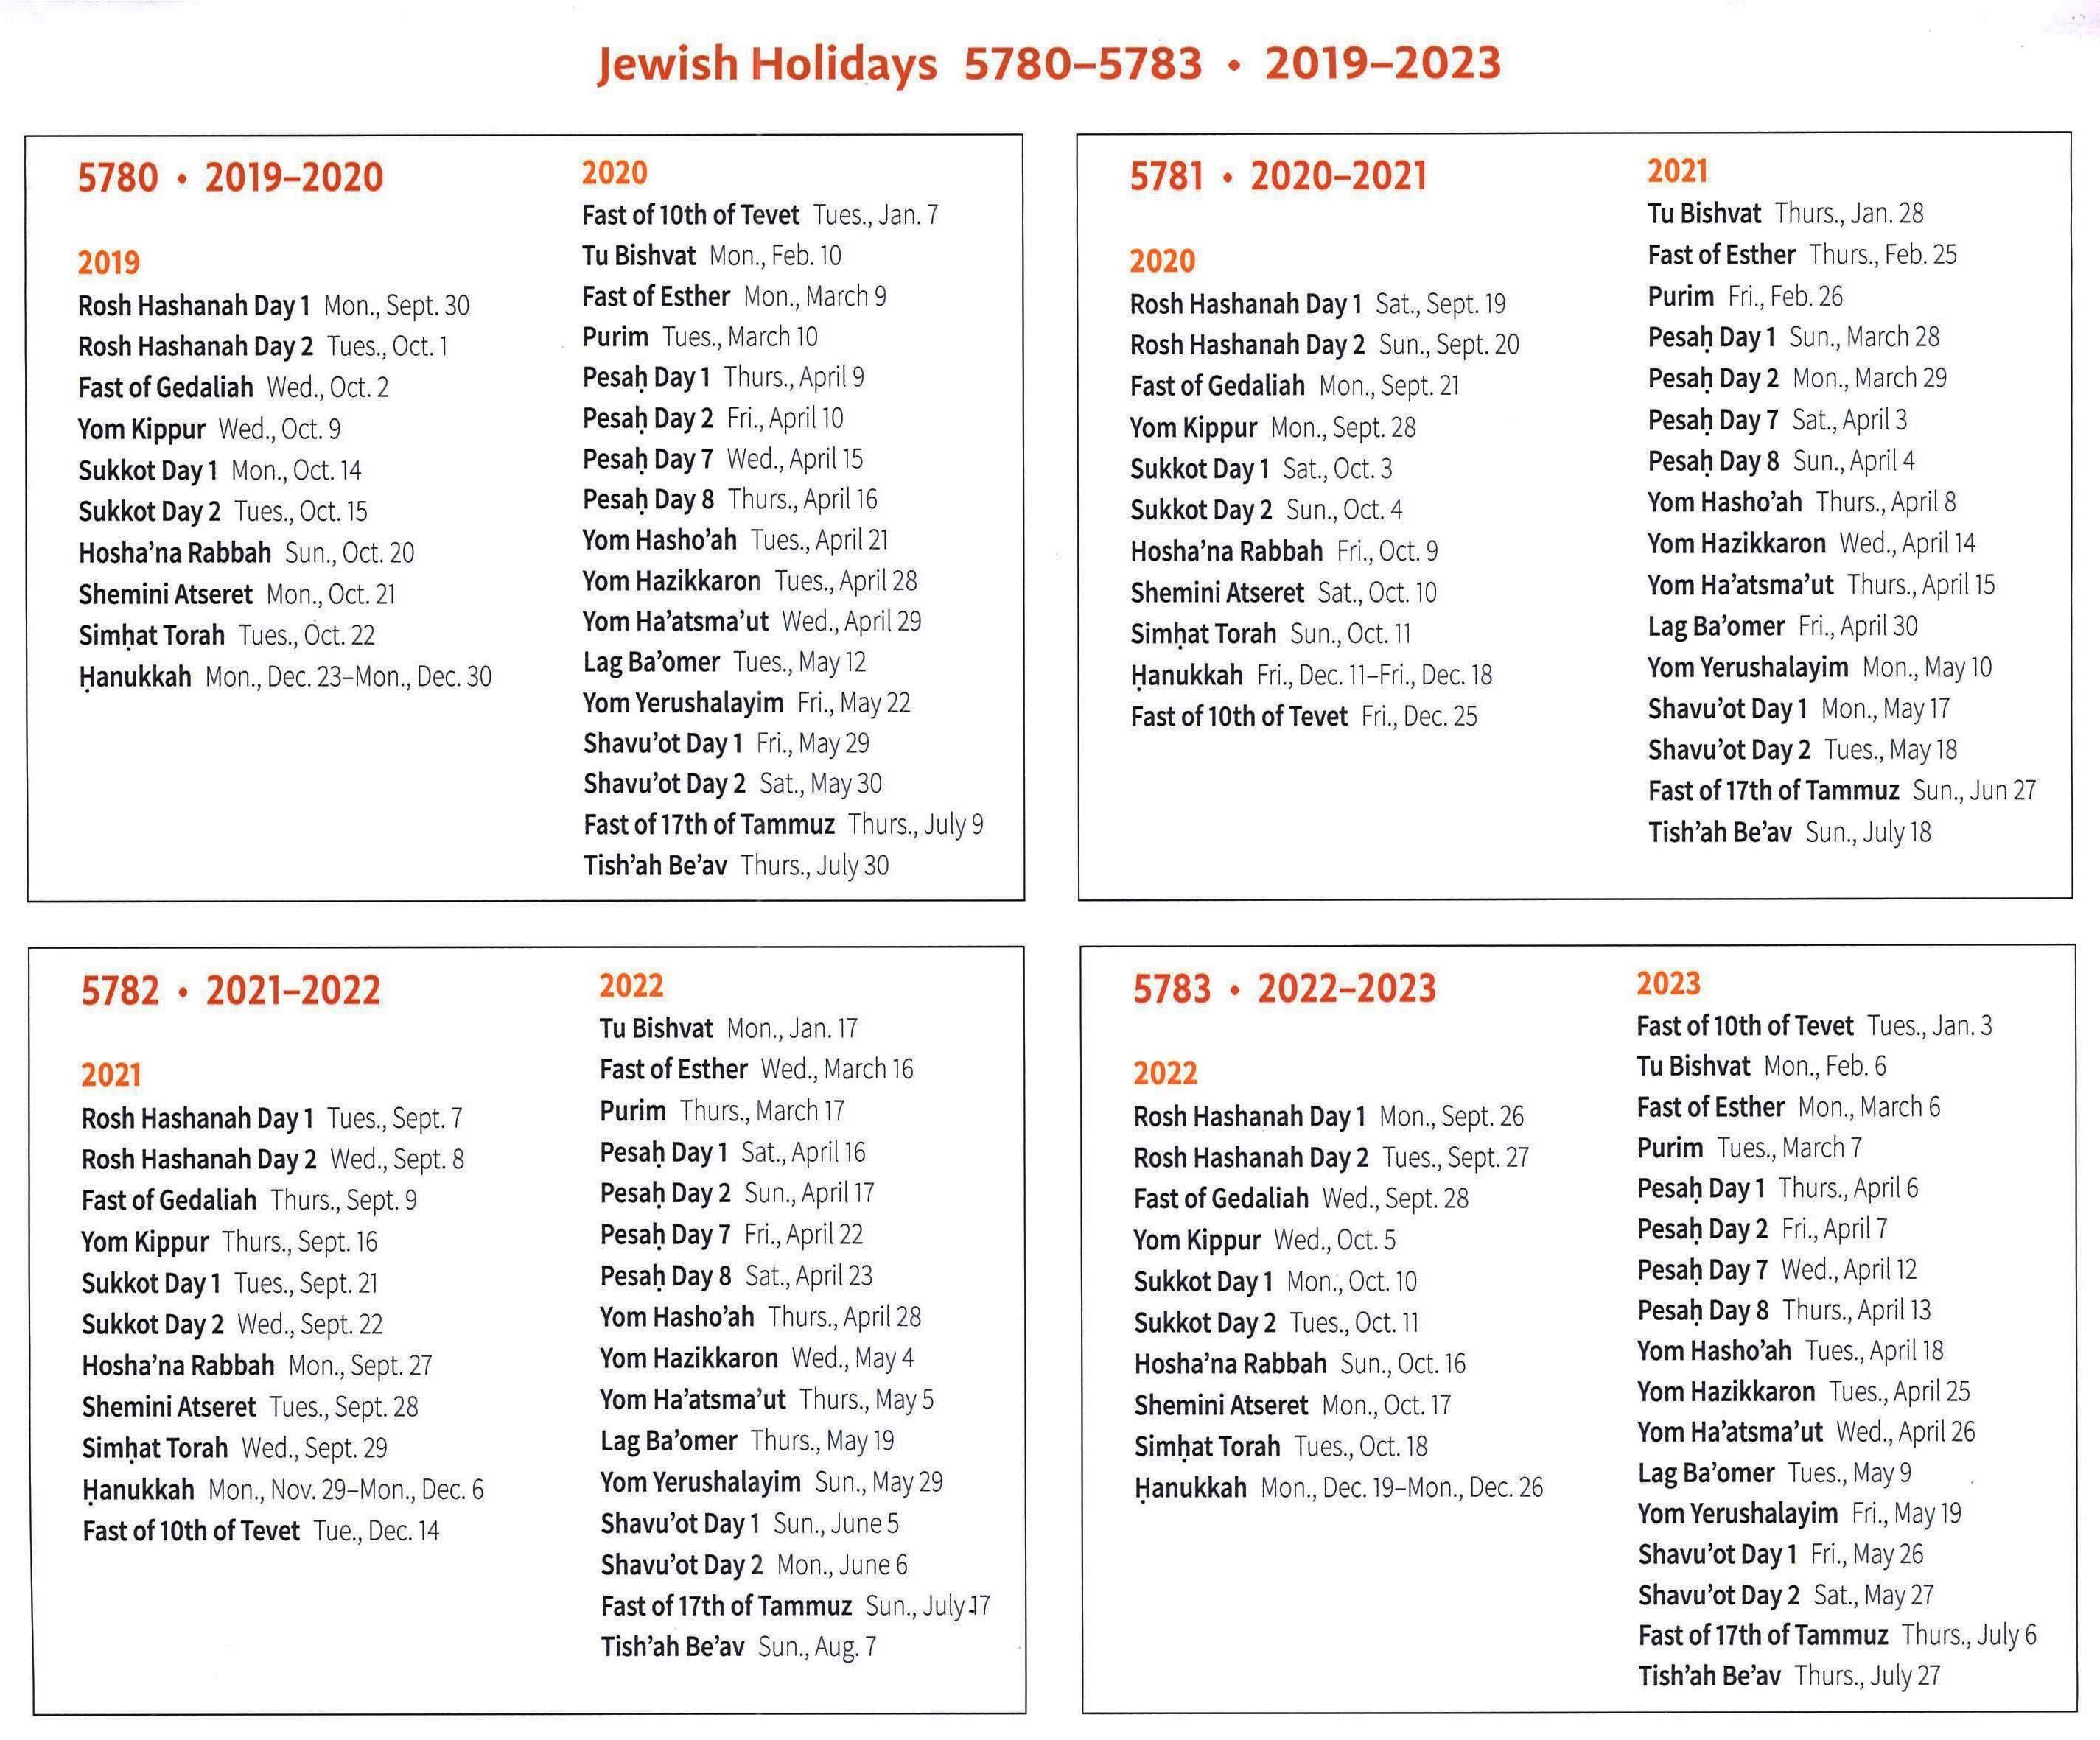 2021 calendar with jewish holidays printable - shopperji.com